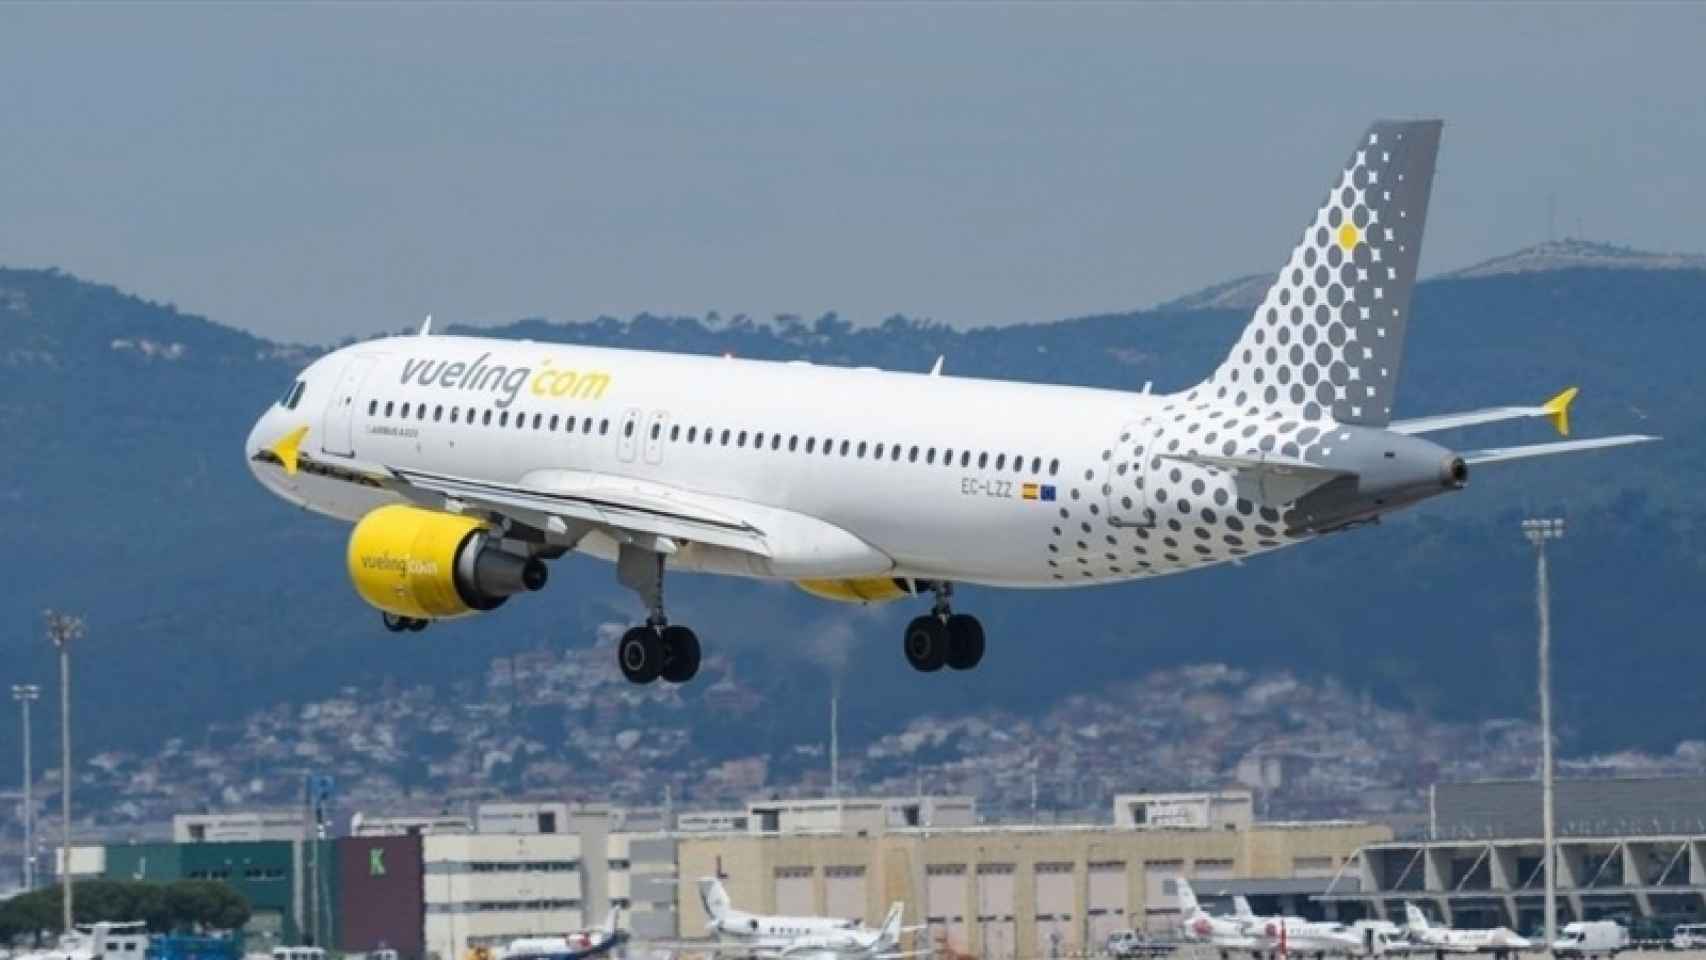 El vuelo del suceso cubría la ruta Barcelona-Menorca del pasado sábado